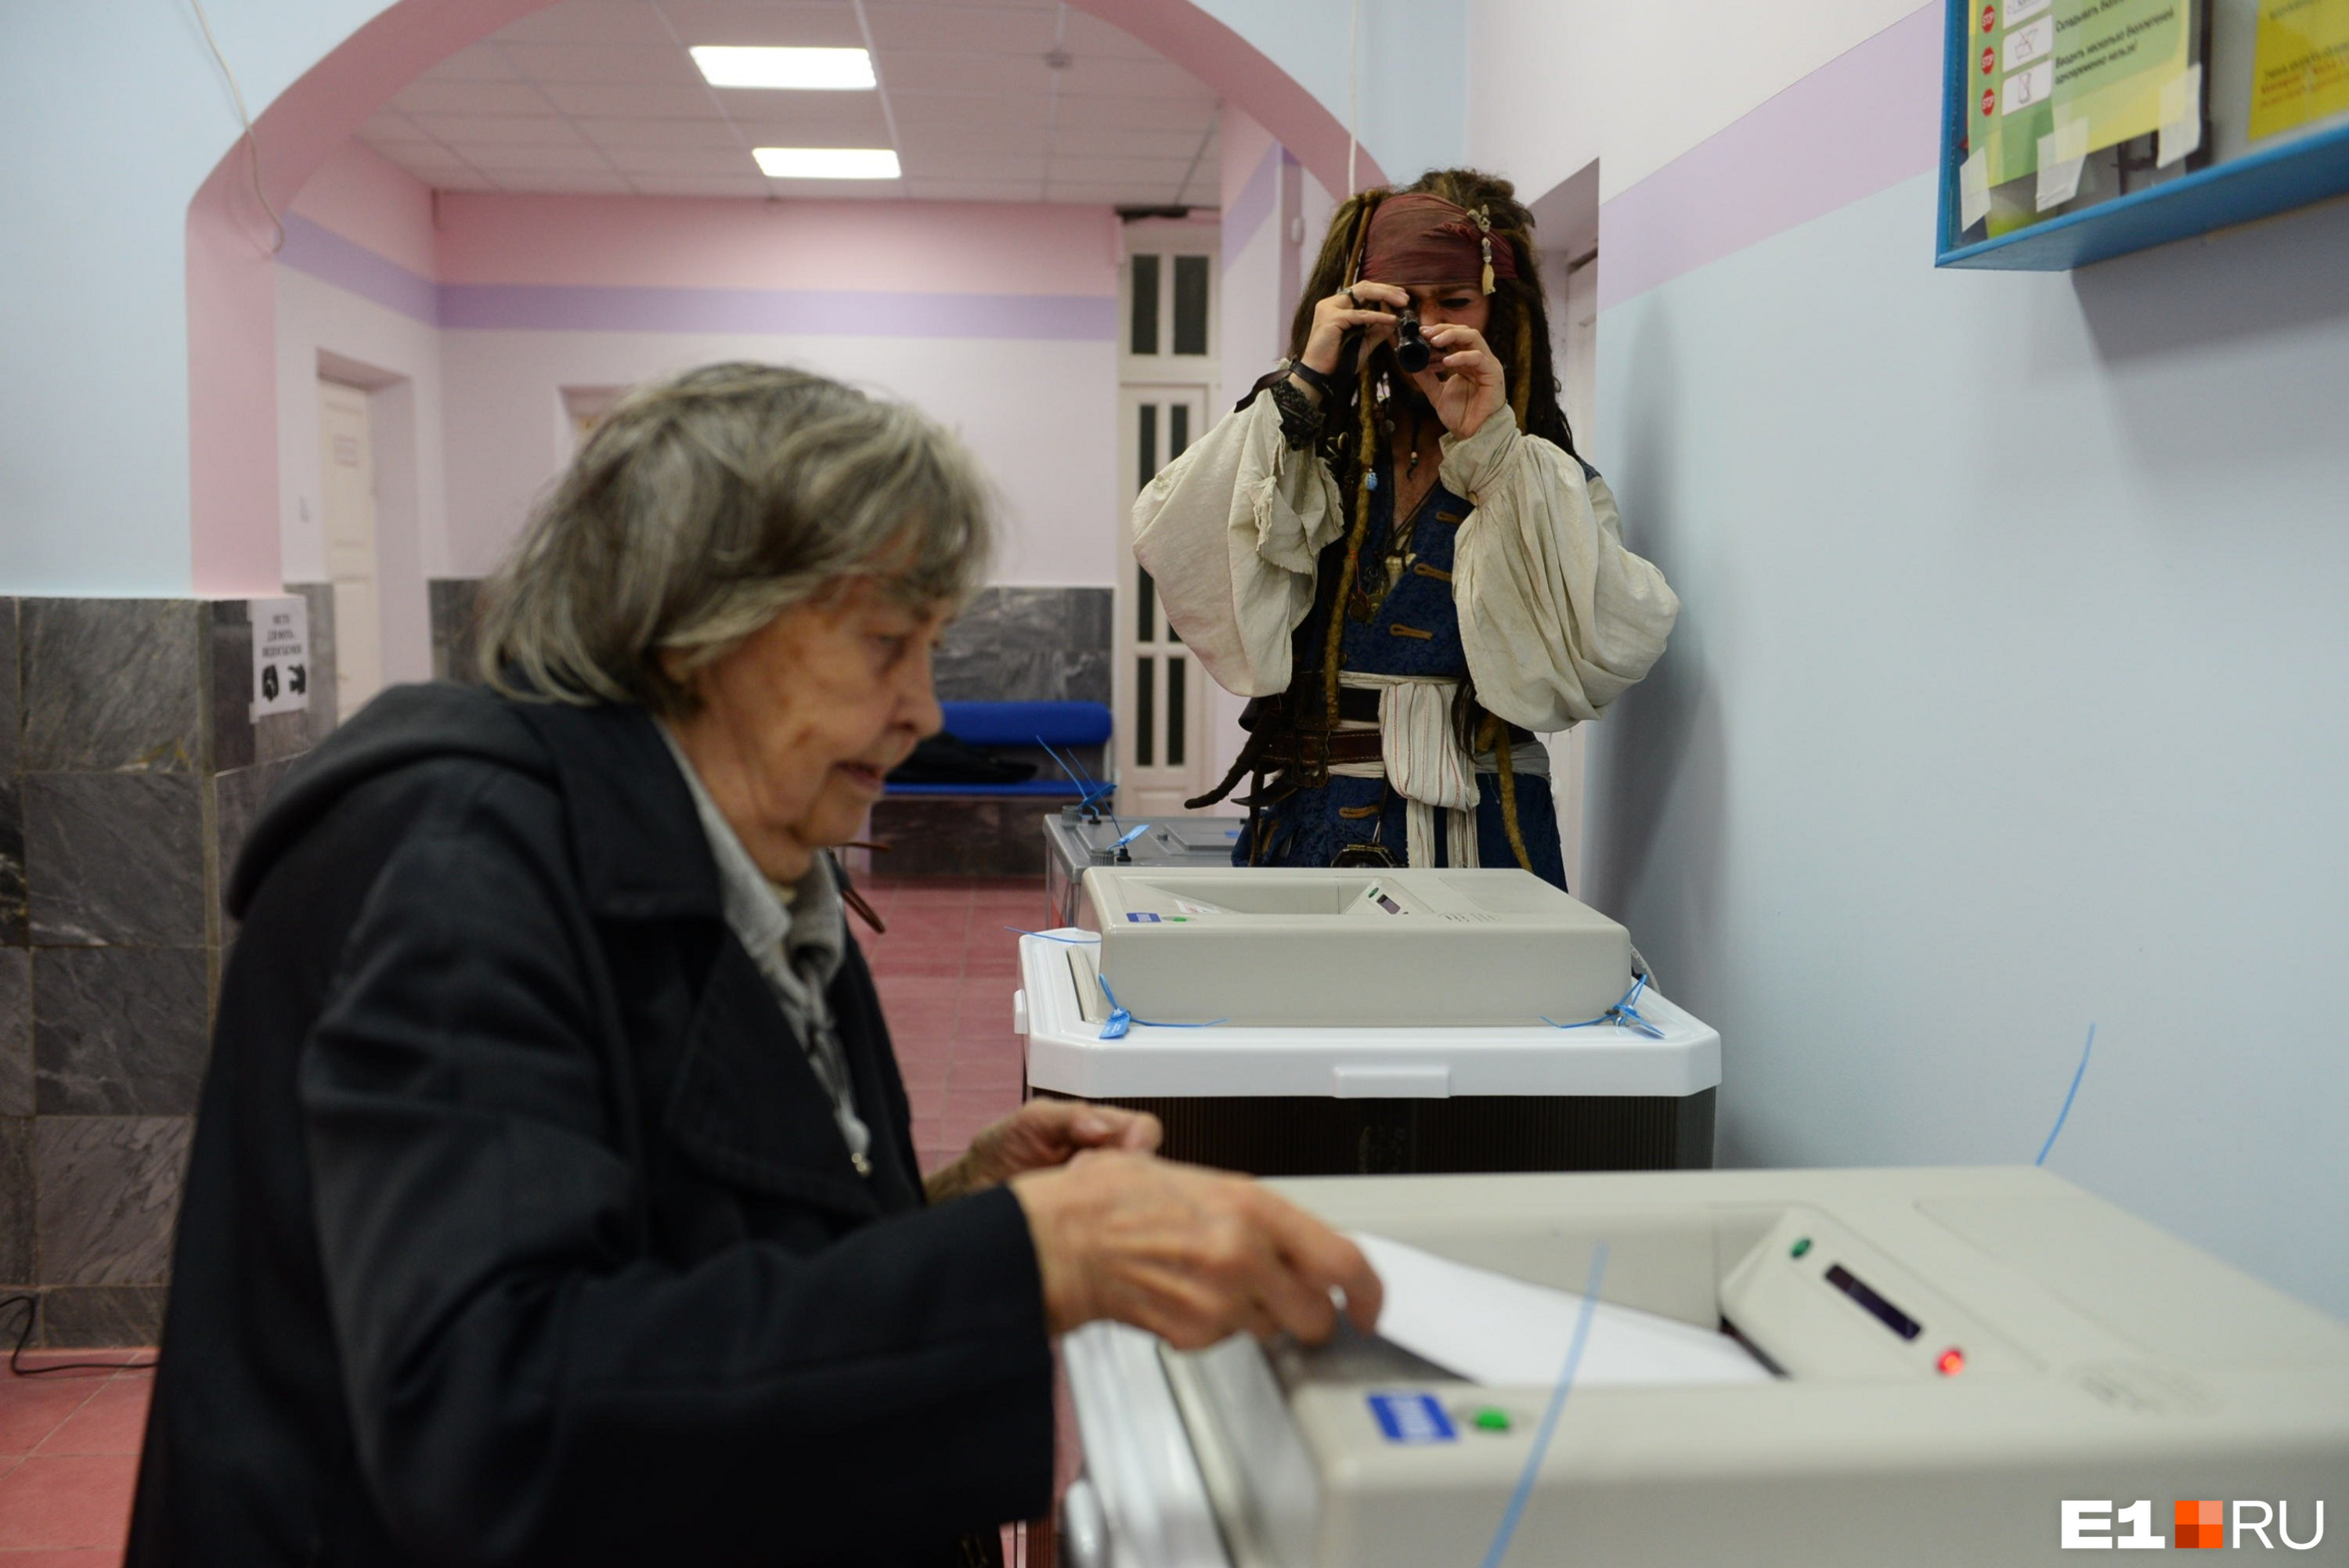 Где можно проголосовать в екатеринбурге. Квартиры за голосование Екатеринбург.